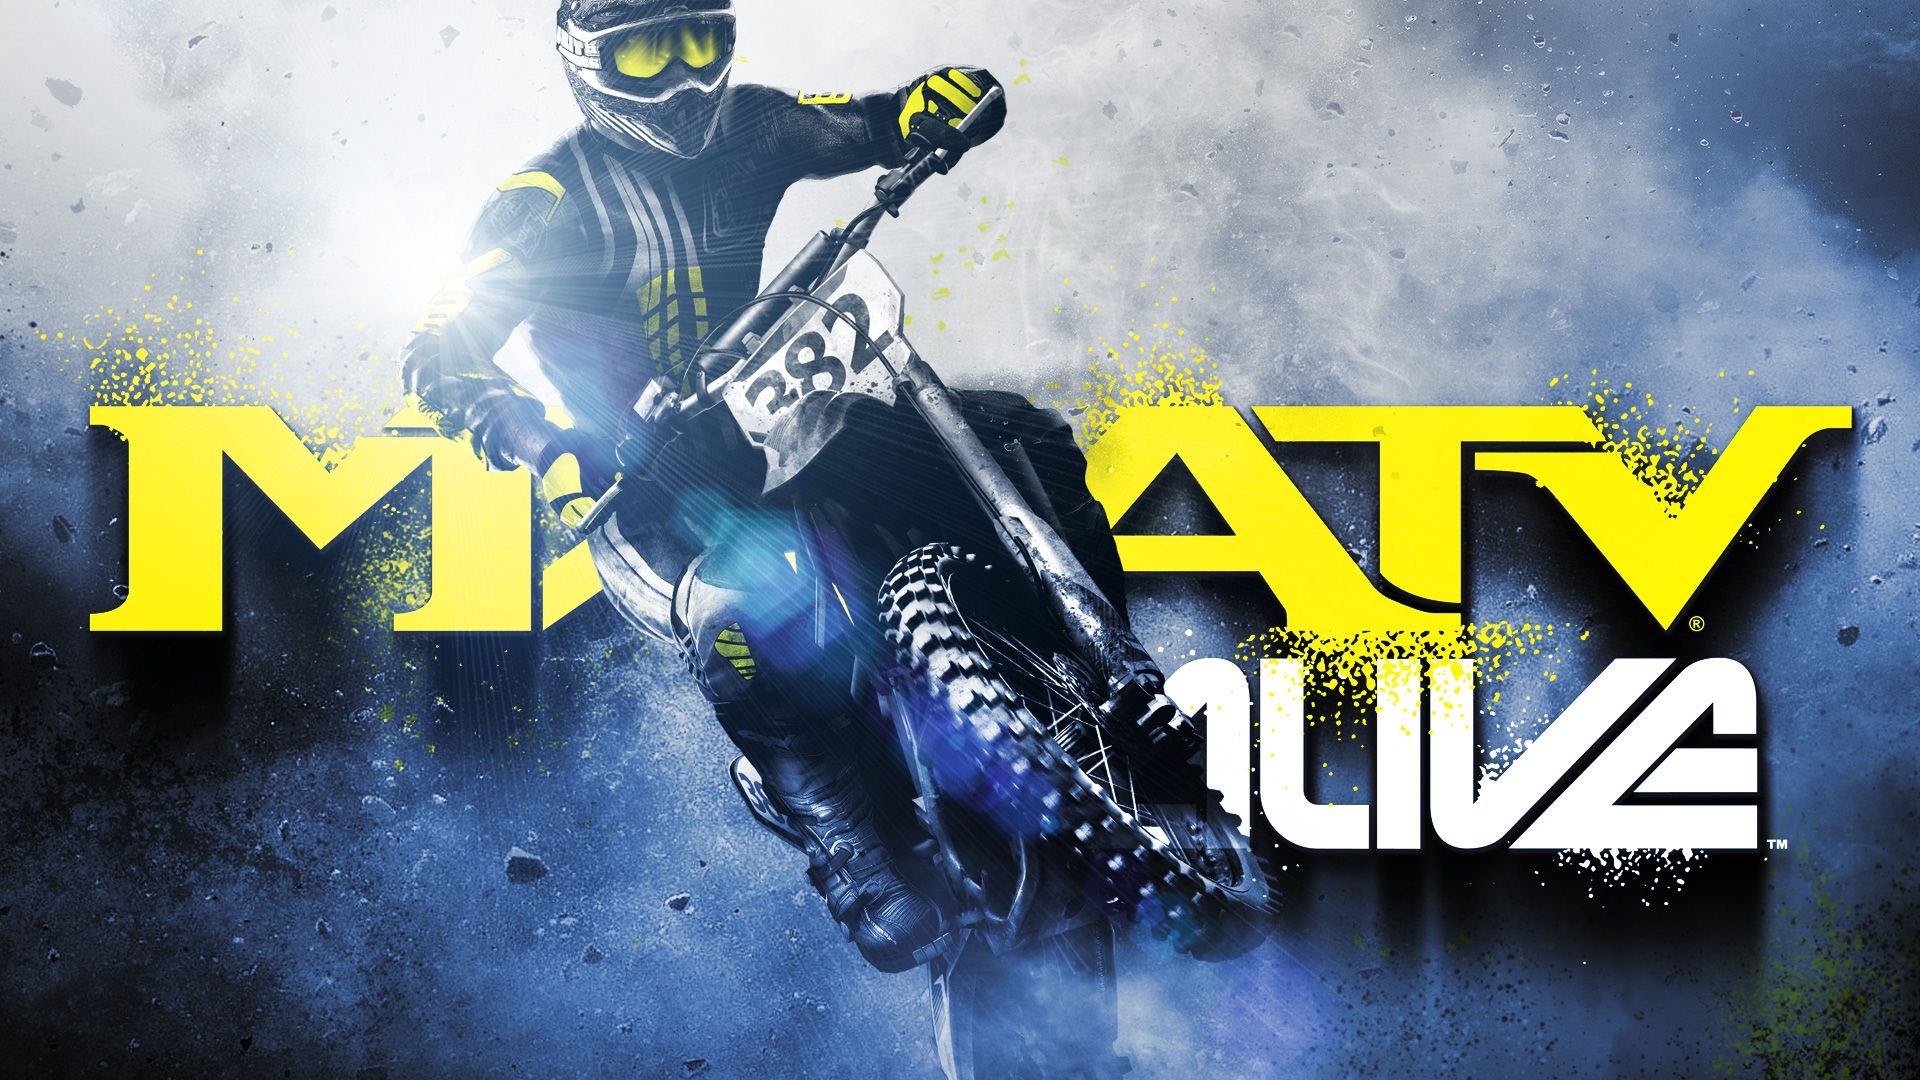 Dando Grau no MX vs ATV Alive para Xbox 360 (Jogo Grátis/Gold